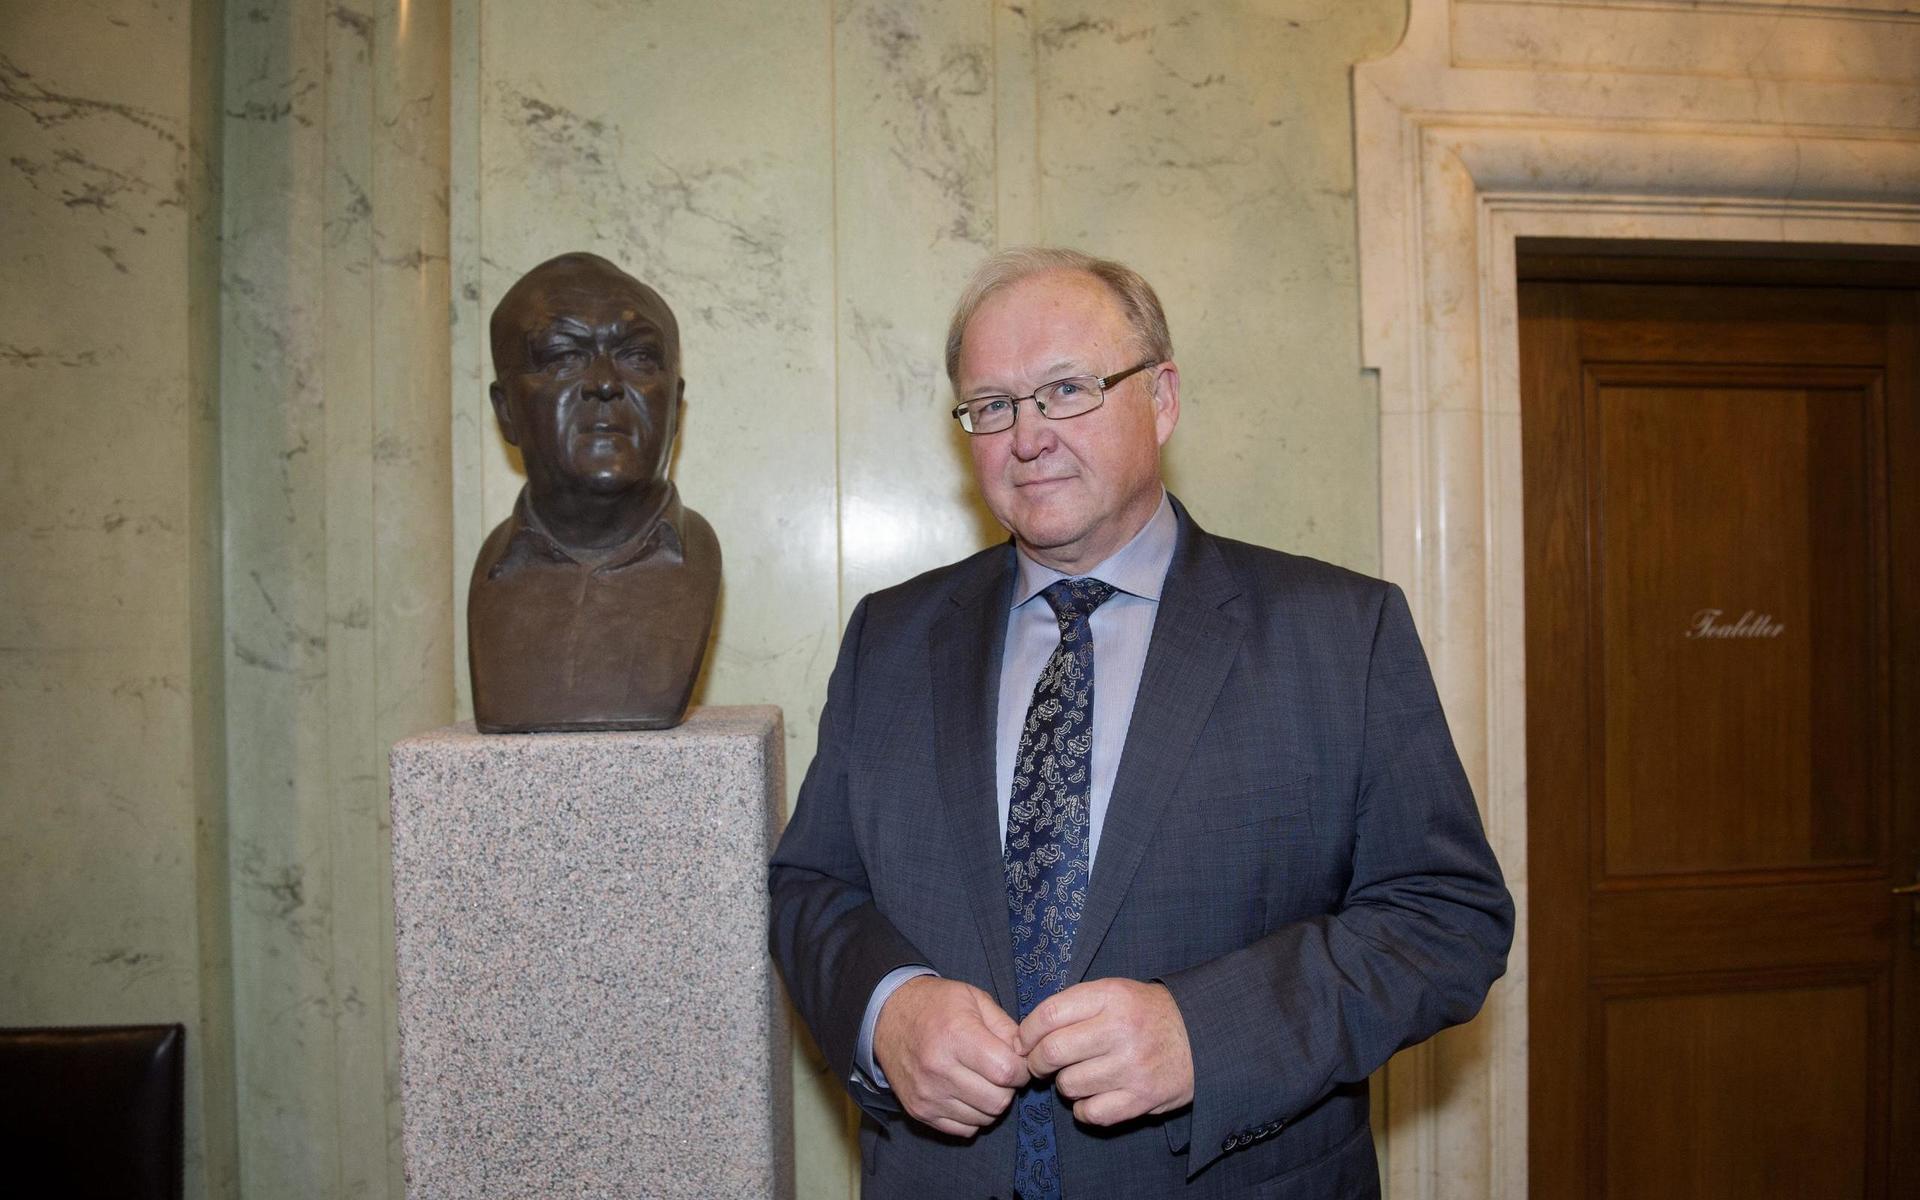 Förre statsministern Göran Persson poserar vid porträttbysten av honom i Riksdagshuset.